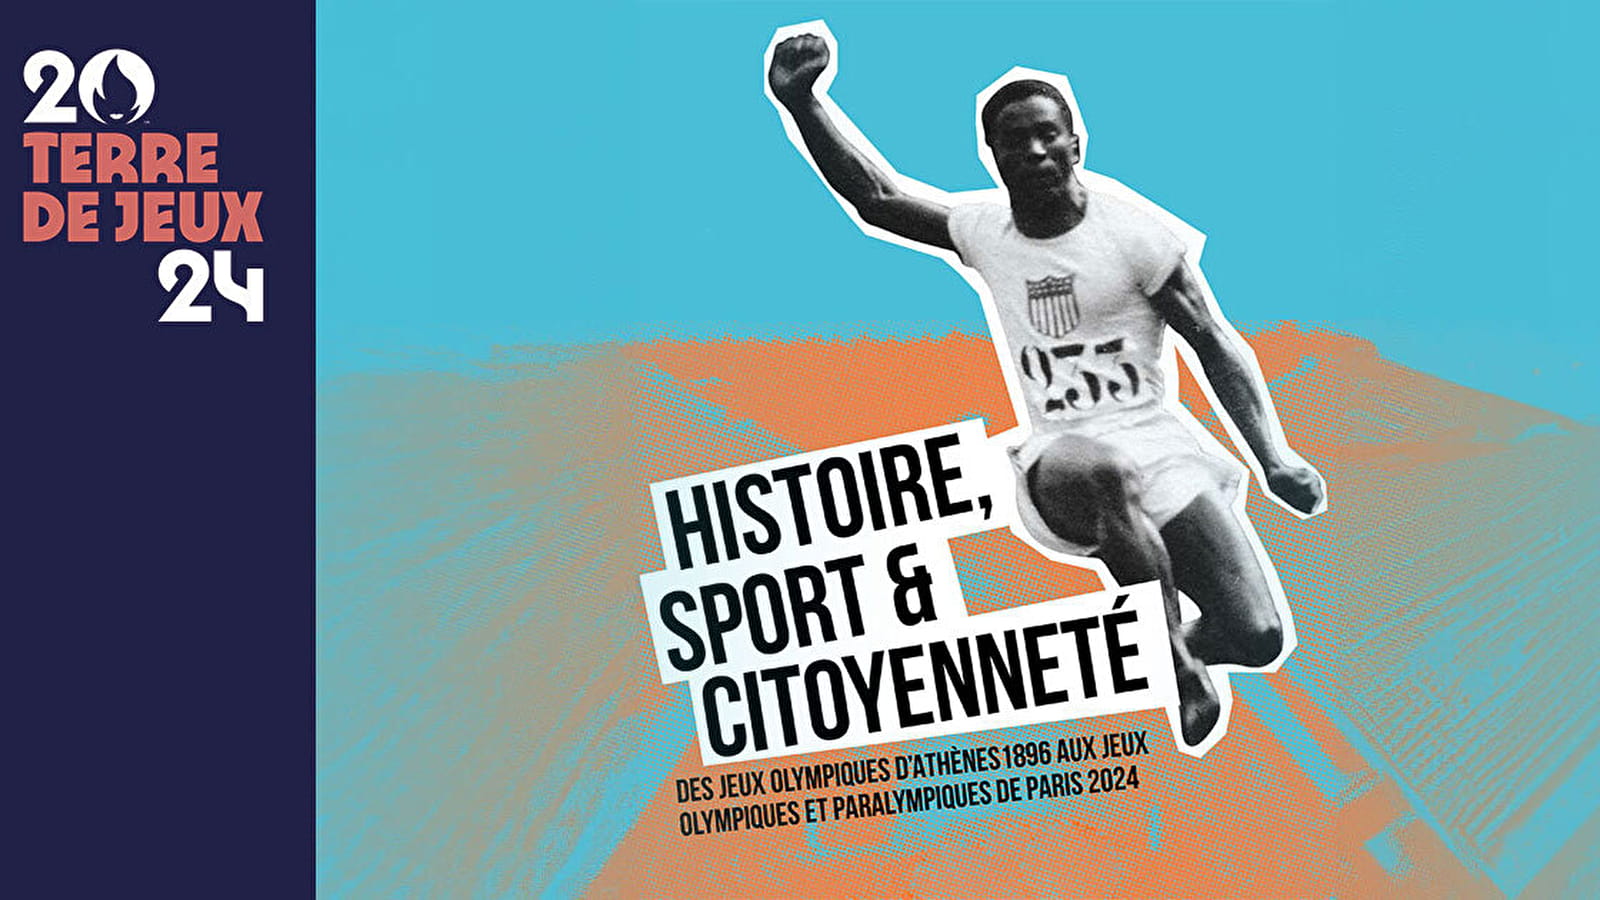 Histoire, sport et citoyenneté